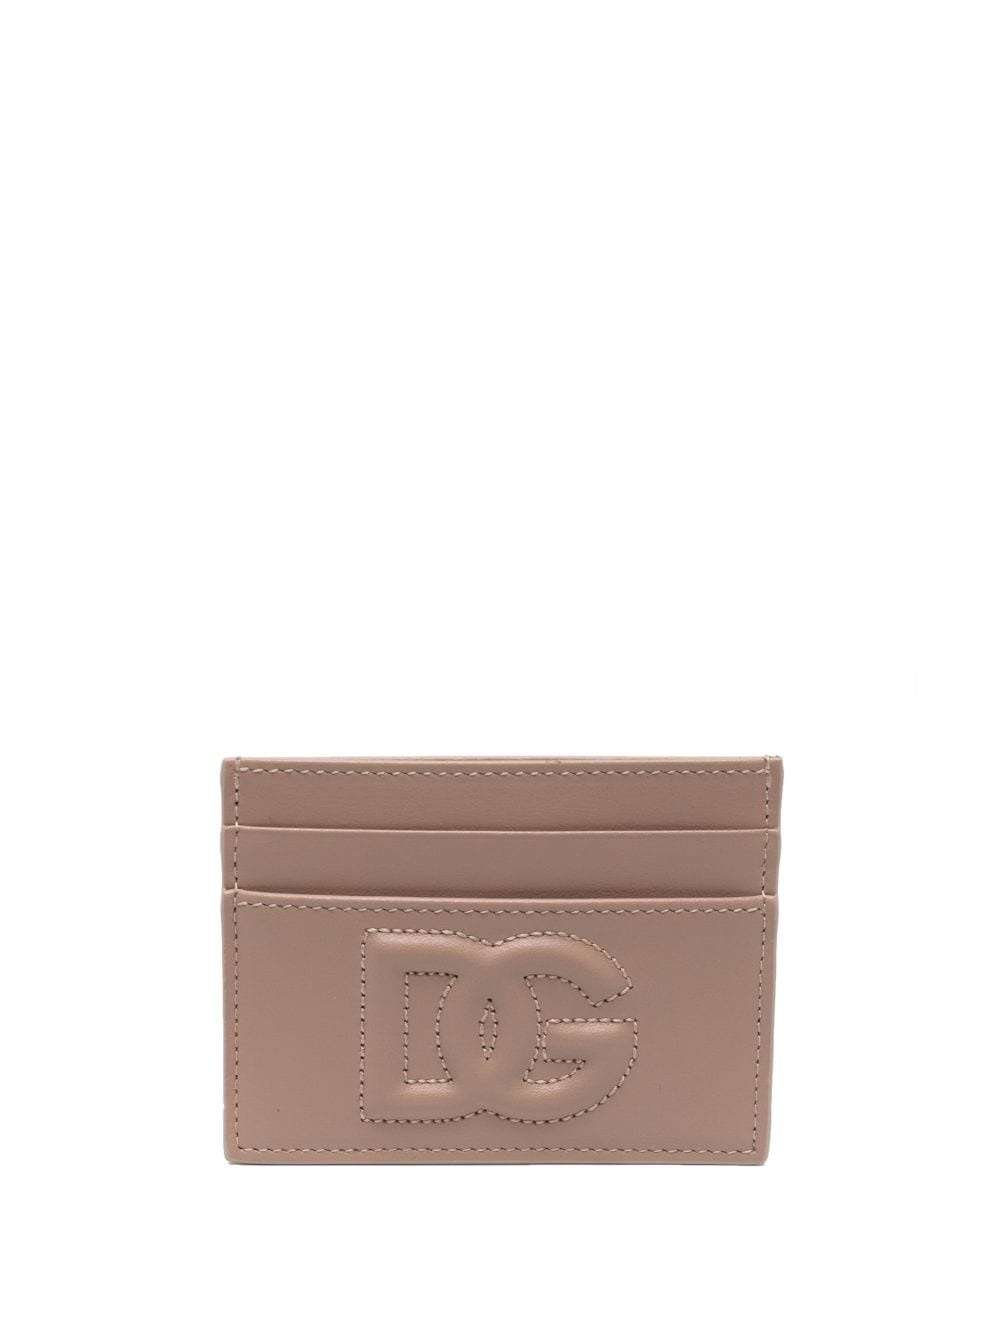 tonal-logo leather cardholder - 1